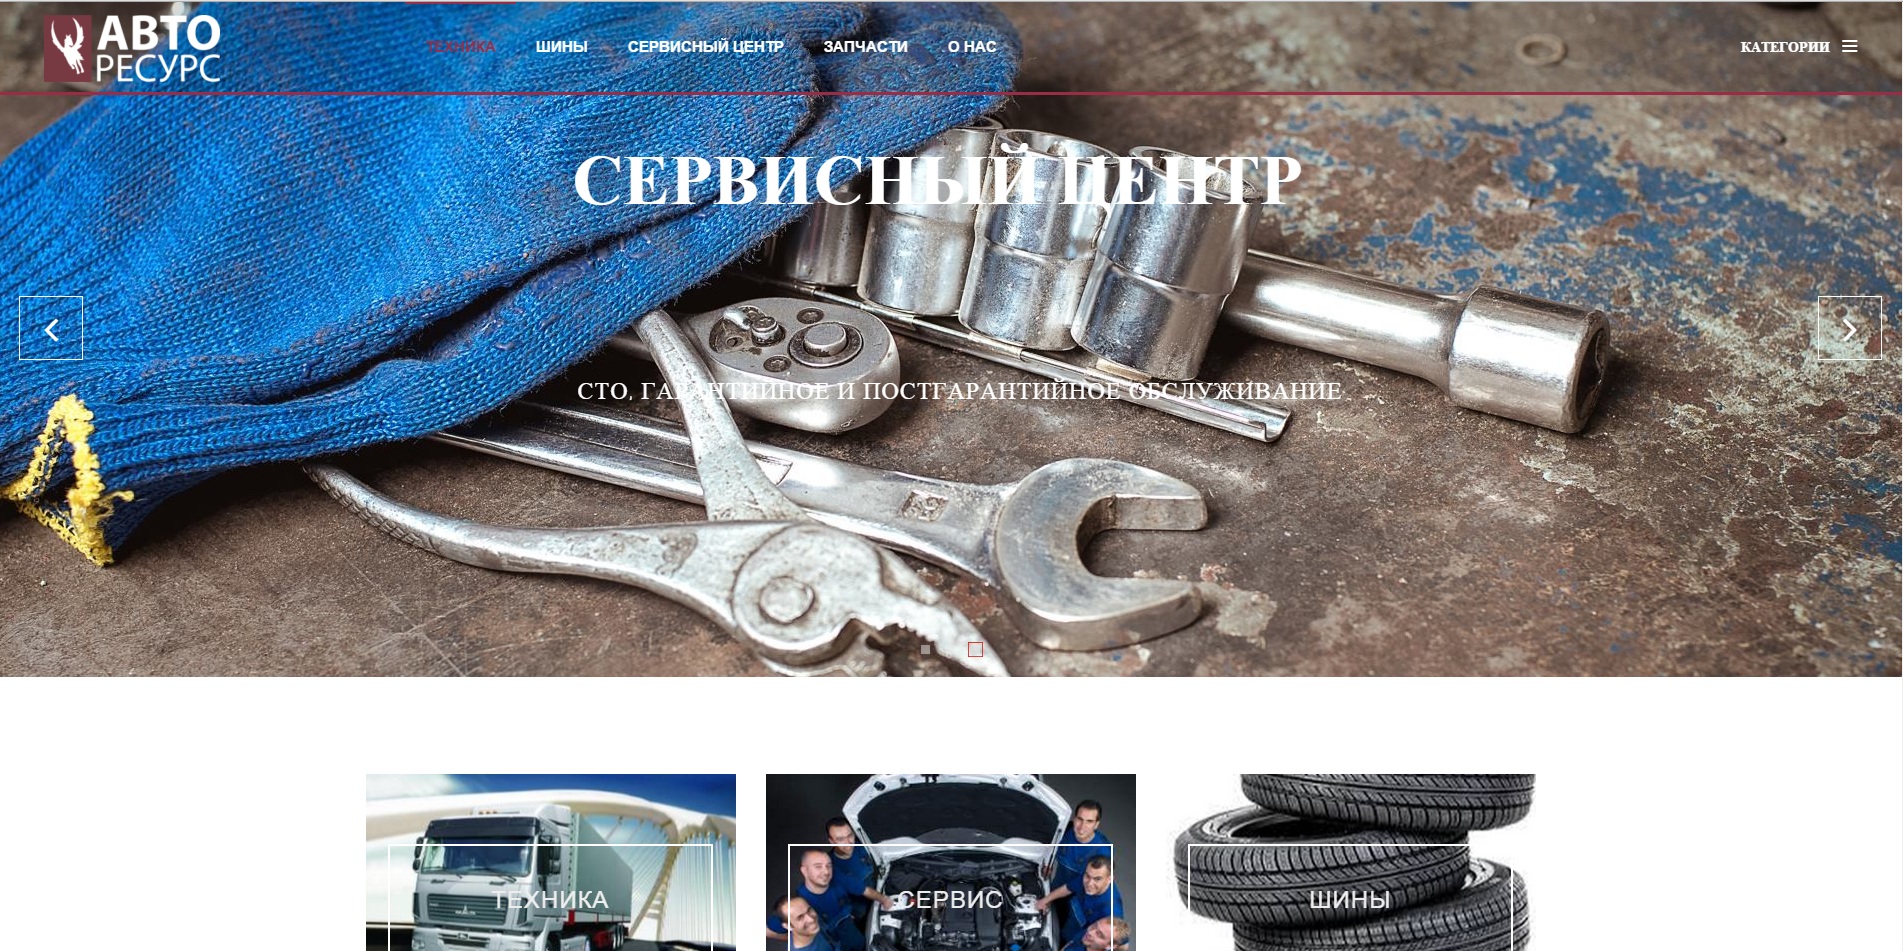 Разработка сайта-каталога грузовой техники